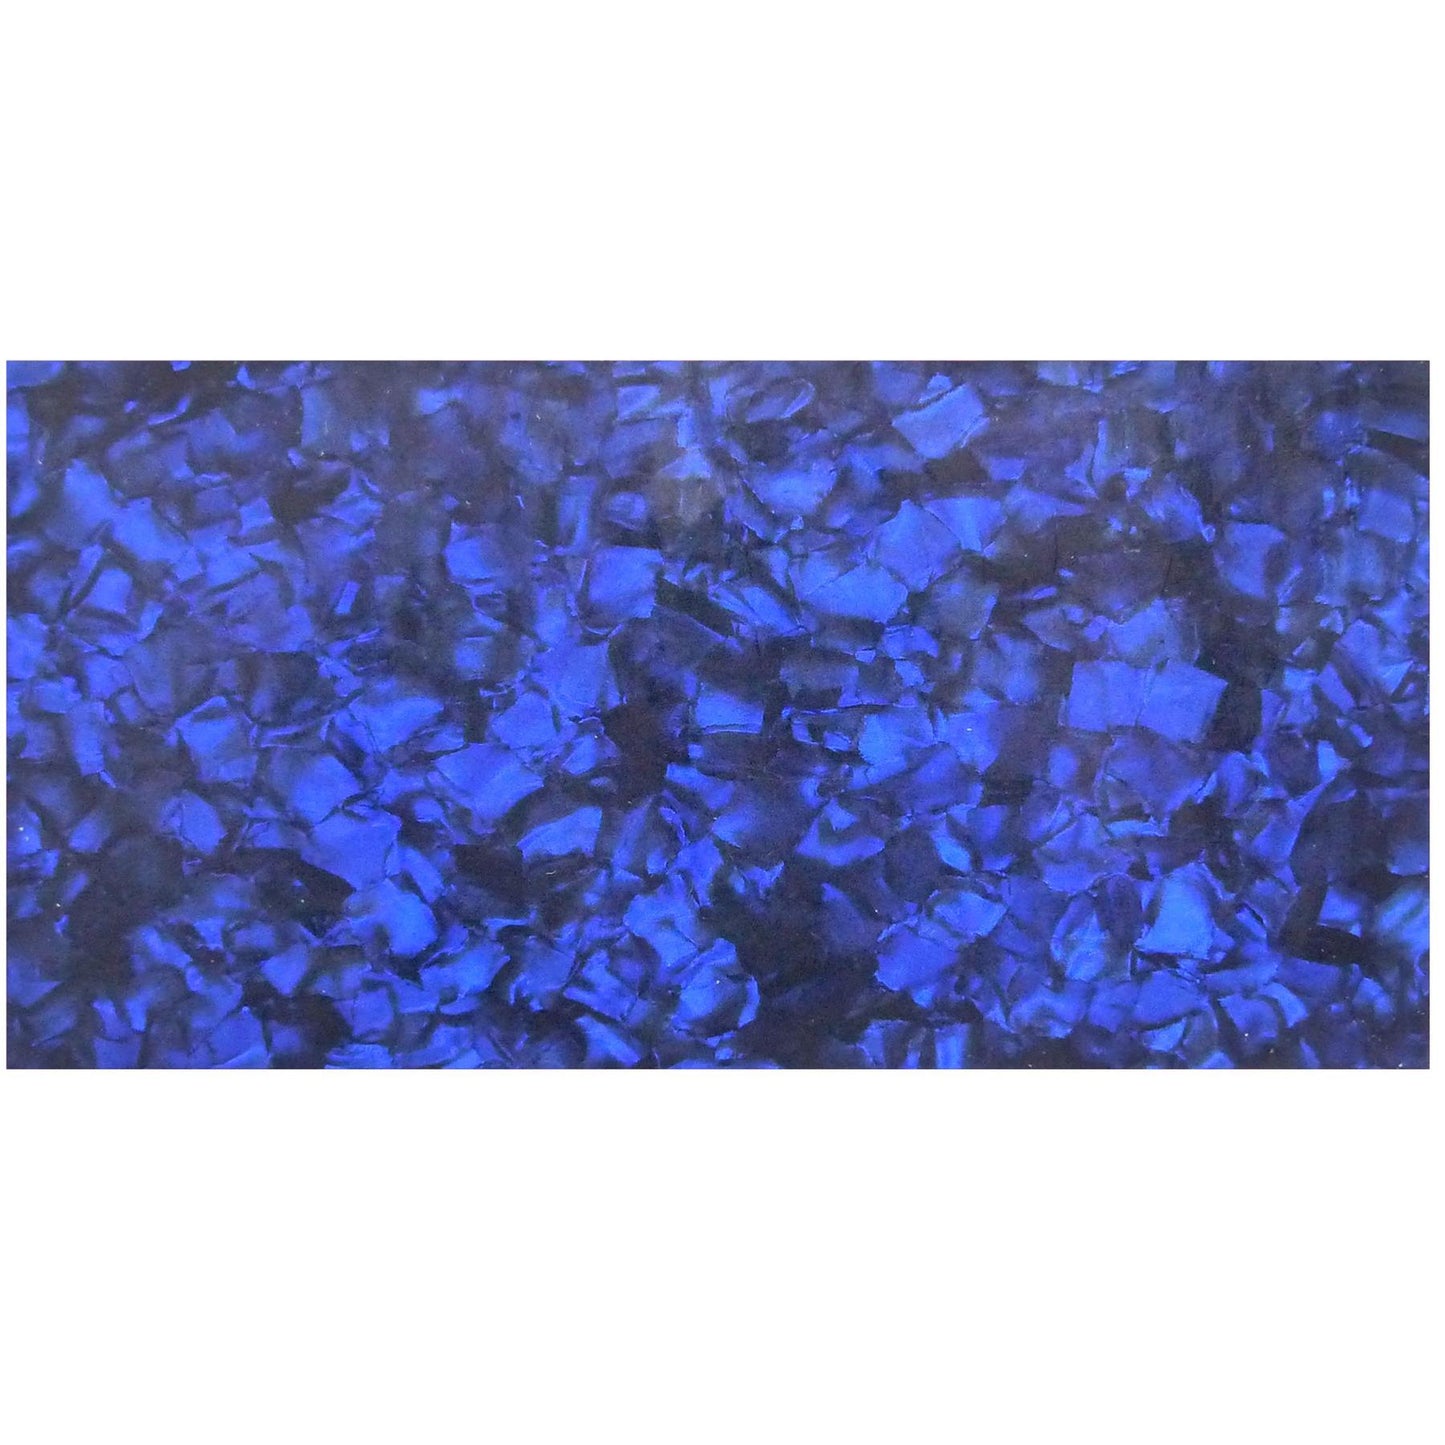 Incudo Blue Pearloid Celluloid Sheet - 200x100x0.71mm (7.9x3.94x0.03")